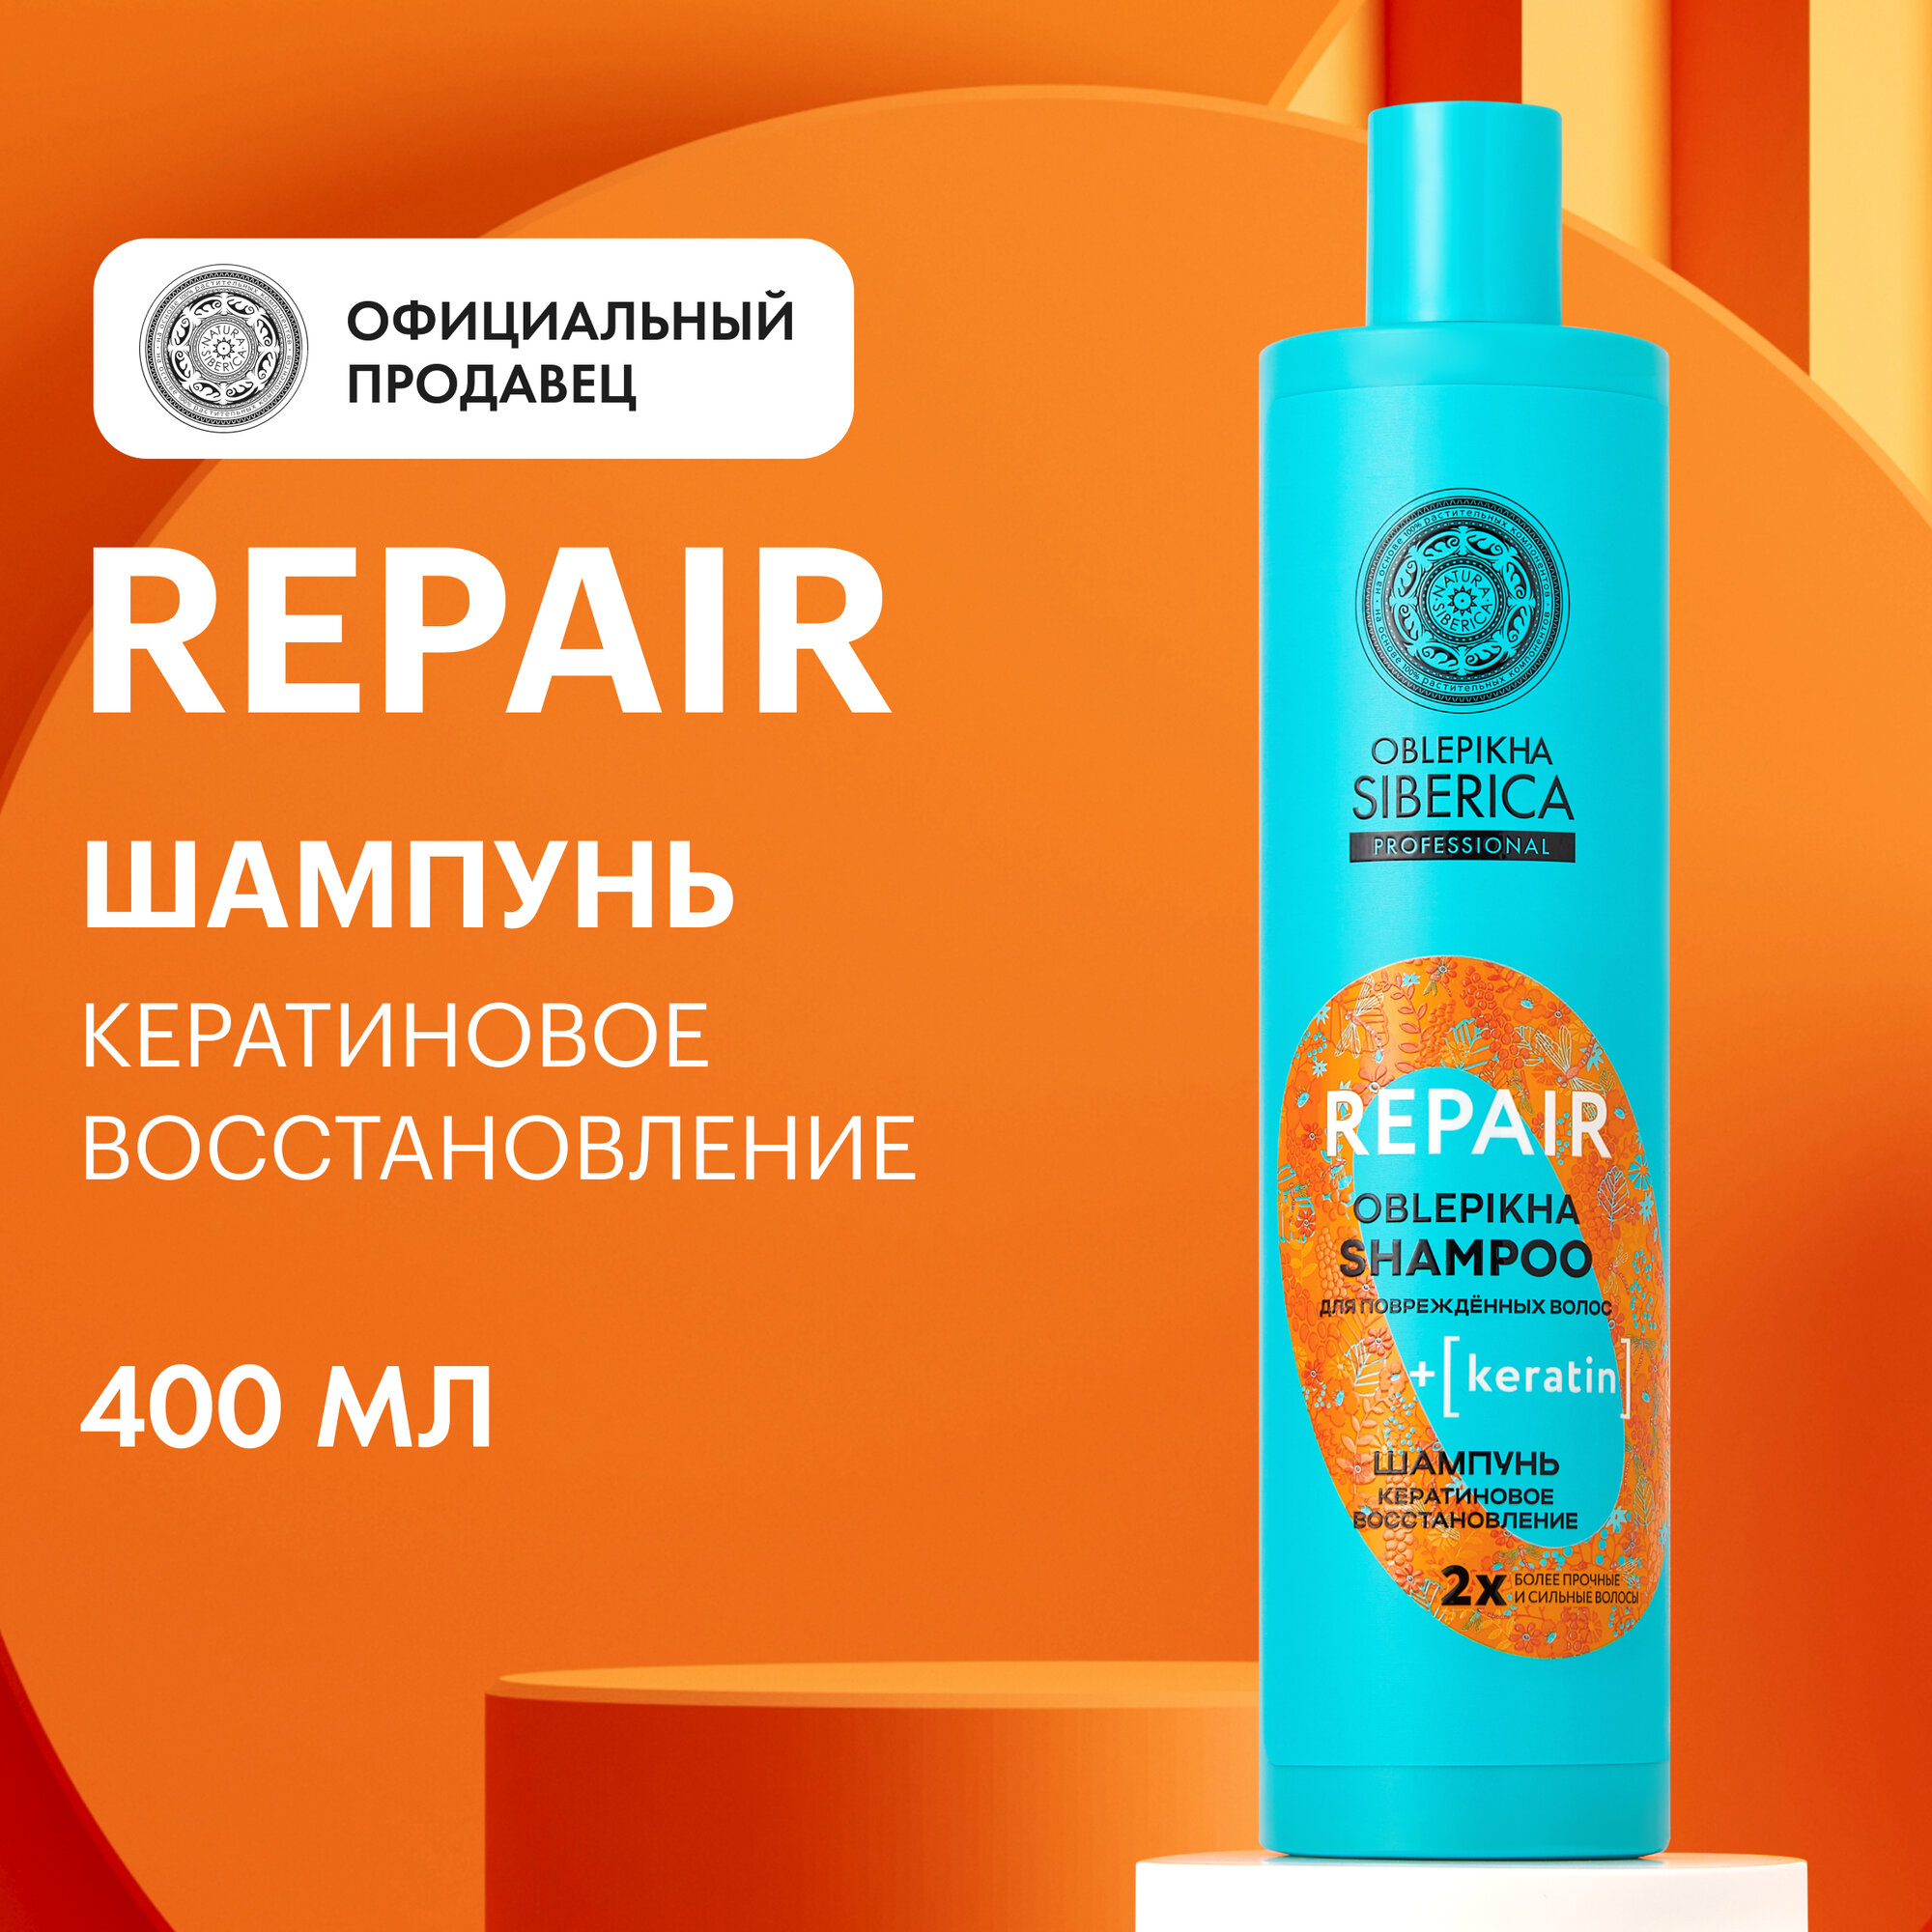 Шампунь для повреждённых волос OBLEPIKHA SIBERICA PROFESSIONAL Кератиновое восстановление, 400 мл